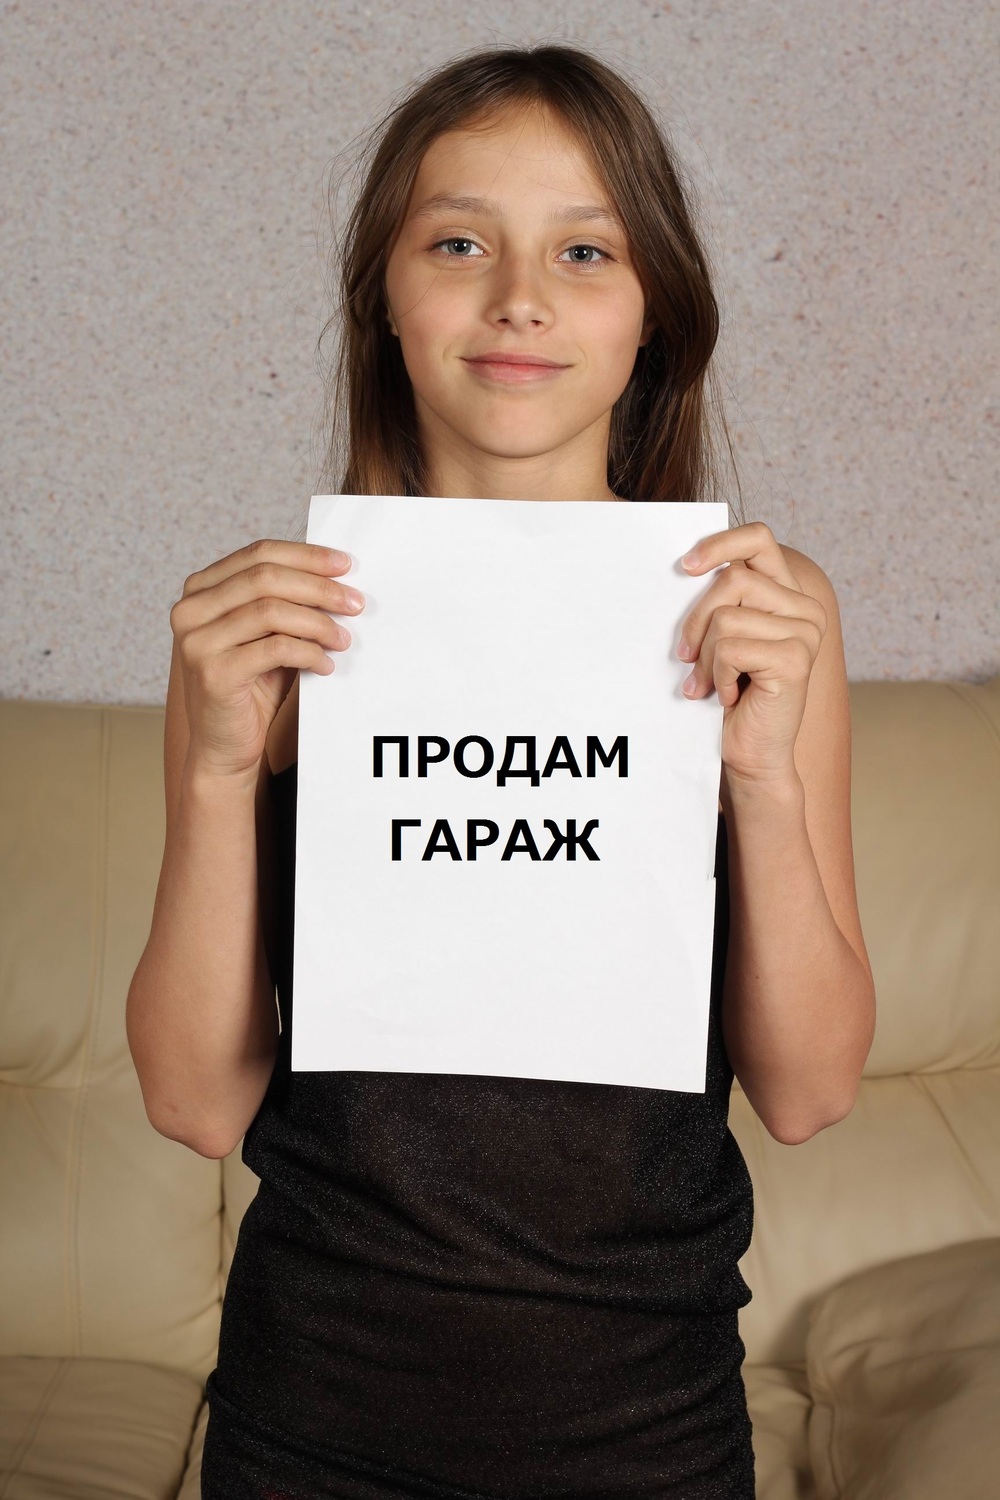 Gambar Vladmodels Masha Babko - Gatotkaca Search